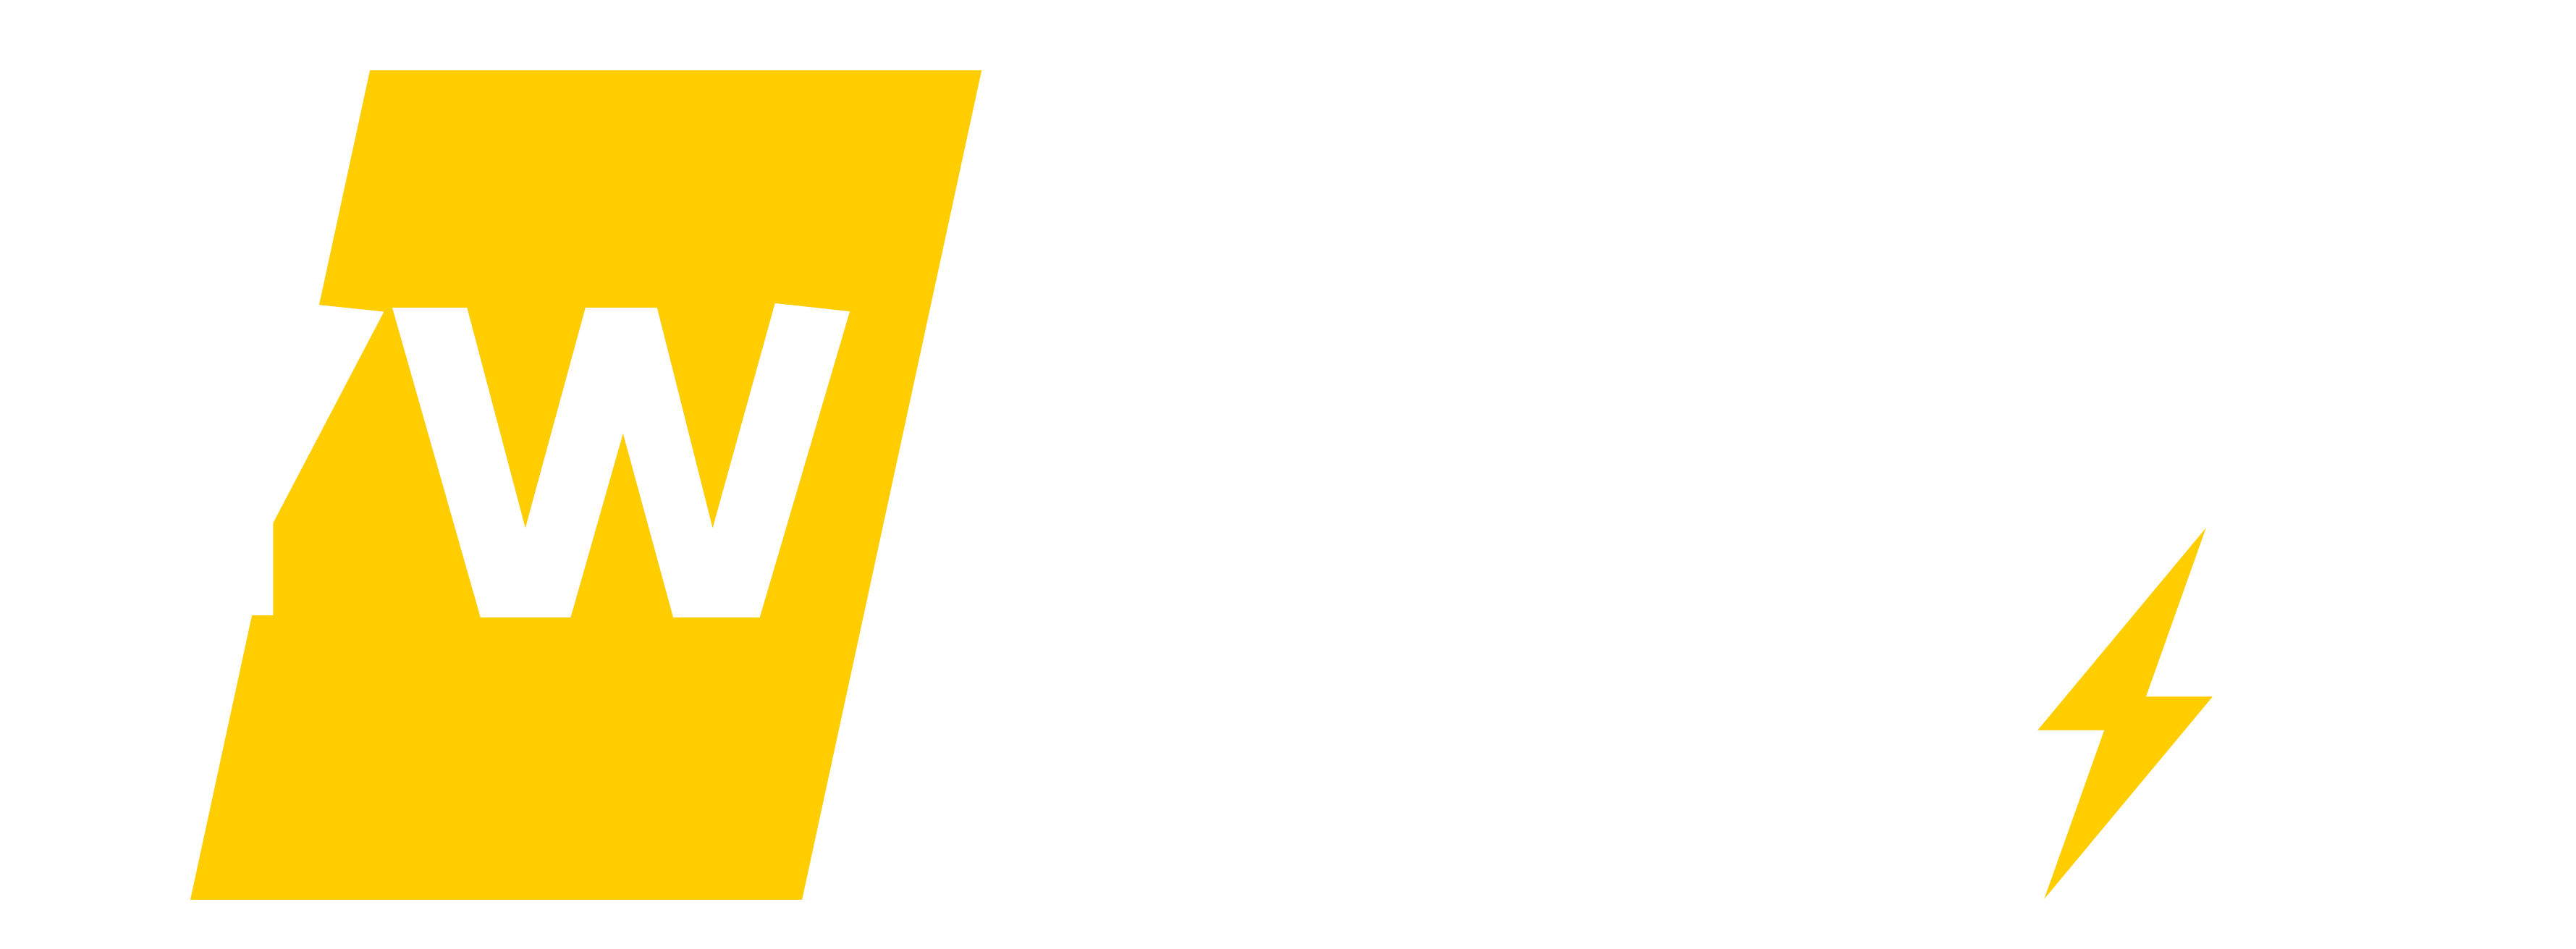 Yemen Week